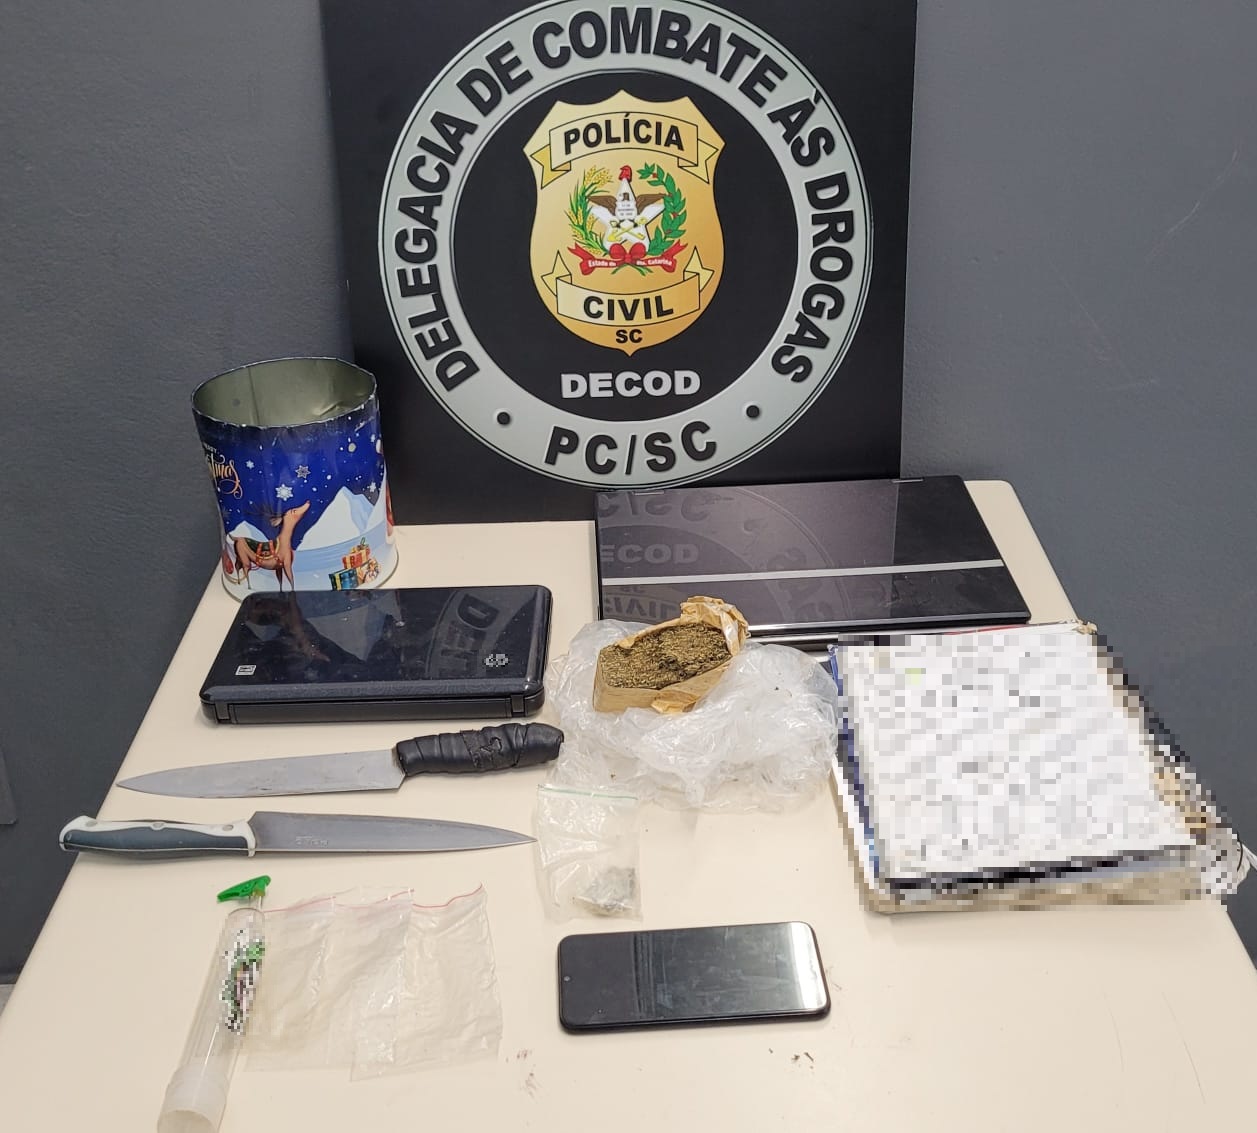 banner da delegacia de combate as drogas com a insígnia da PC, abaixo uma mesa com caderno, duas facas, dois notebooks, droga e plásticos